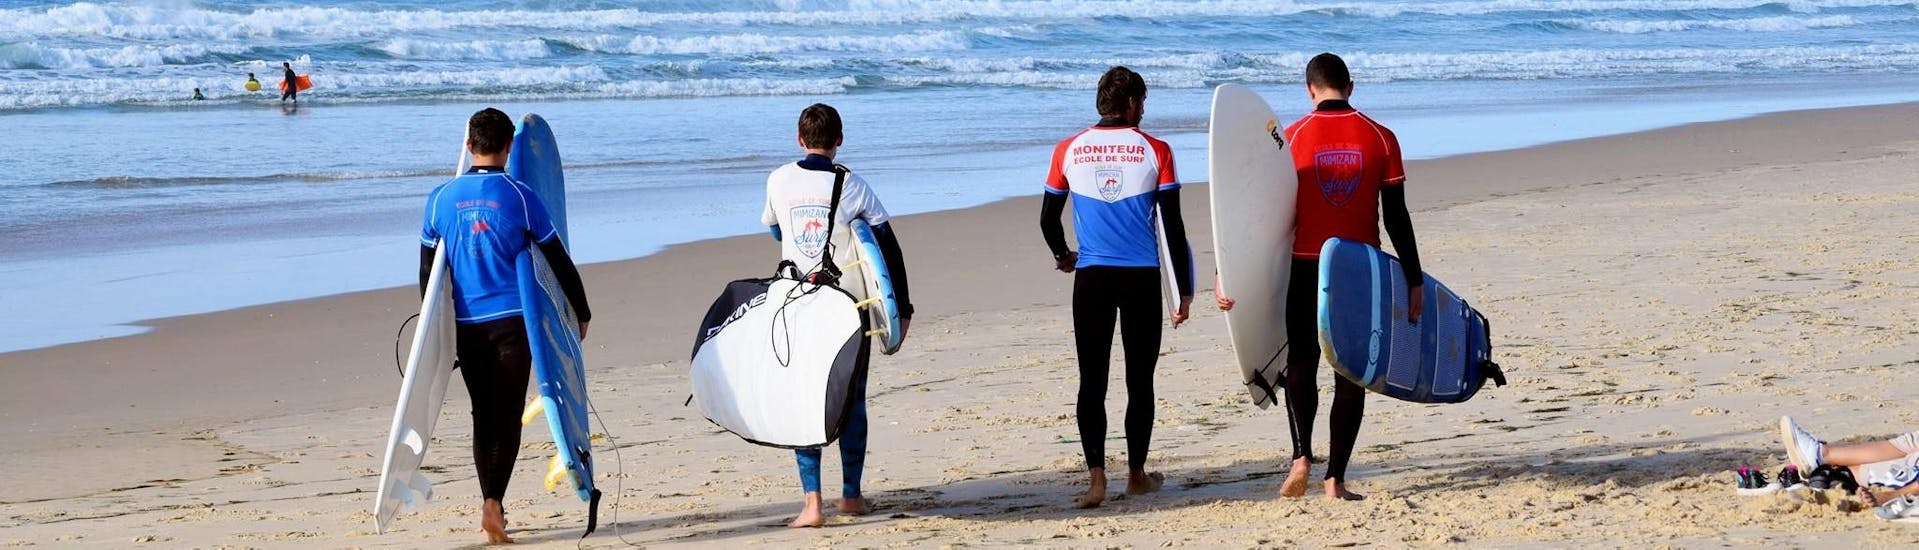 Lezioni private di surf a Mimizan da 6 anni per tutti i livelli.